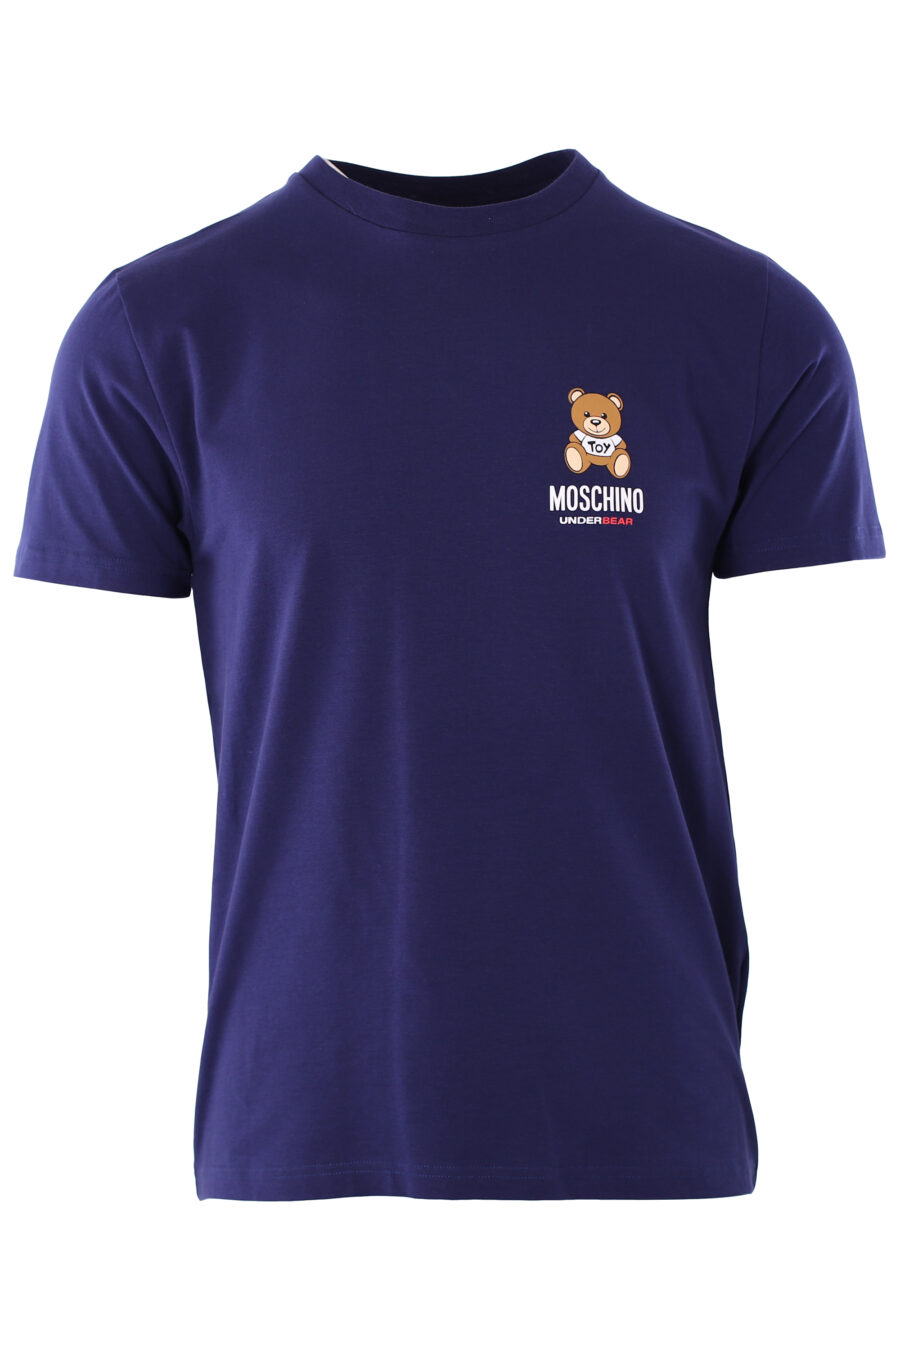 T-shirt azul com o logótipo do urso "underbear" - IMG 6595